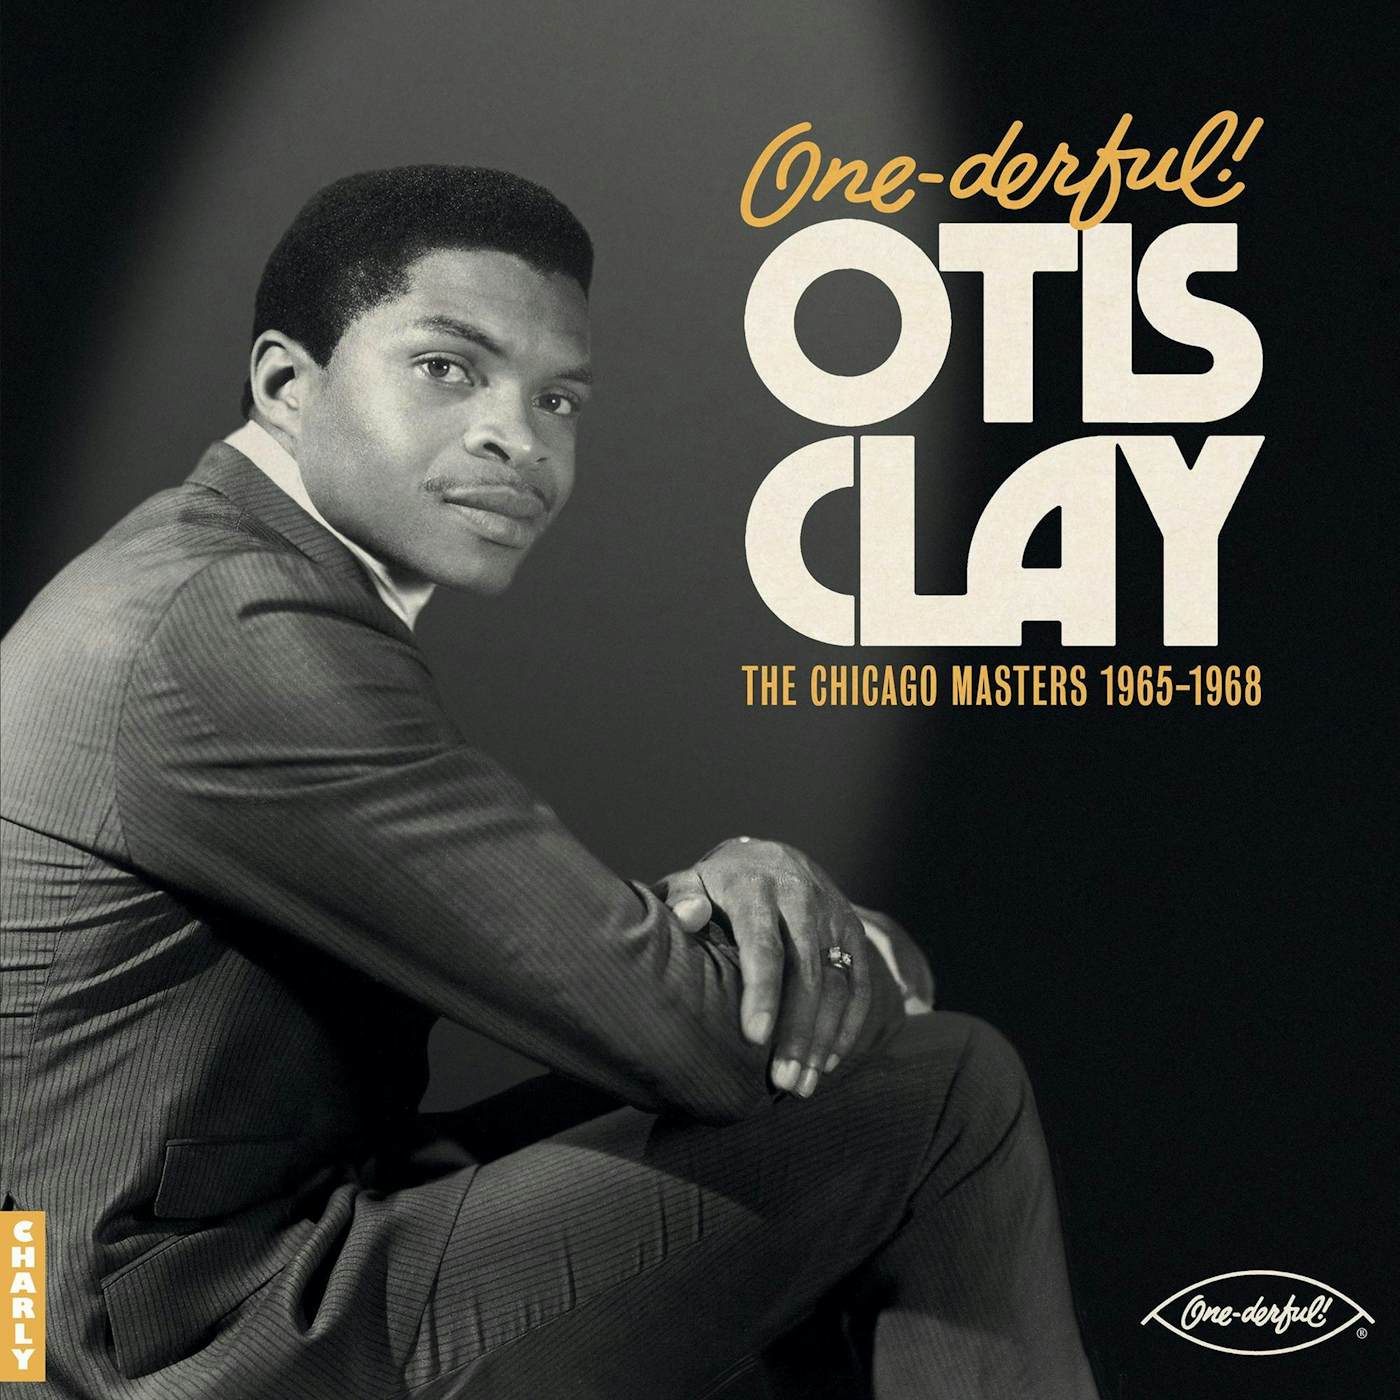 One Derful! Otis Clay  The Chiacgo Maste Vinyl Record